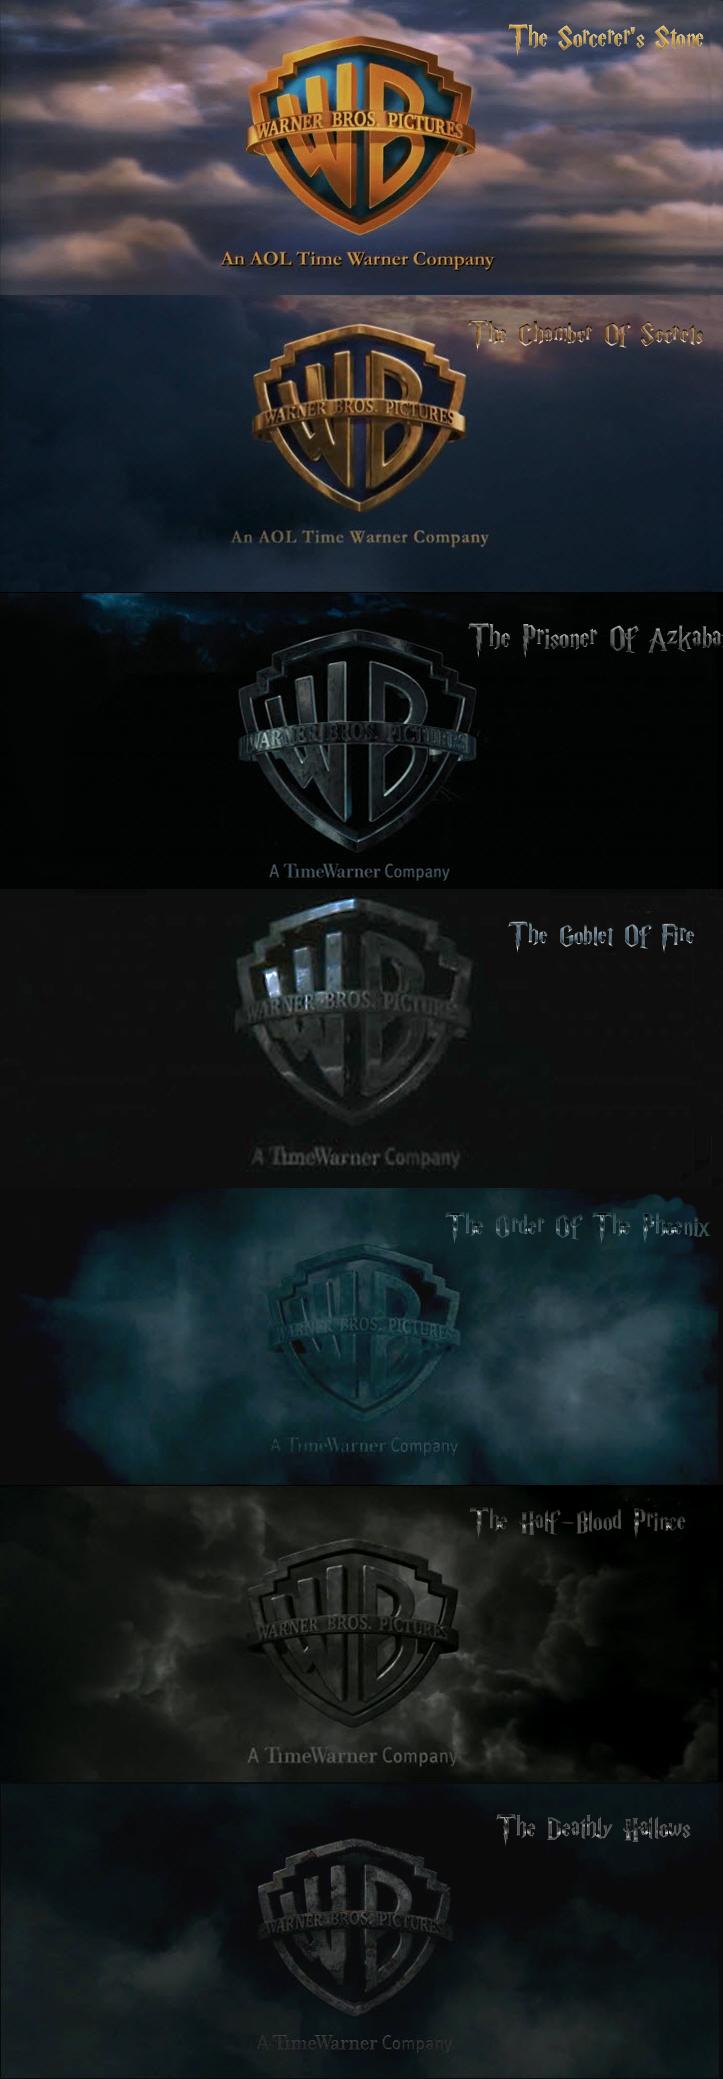 Harry Potter Warner Bros. Title Screens Change Over Time